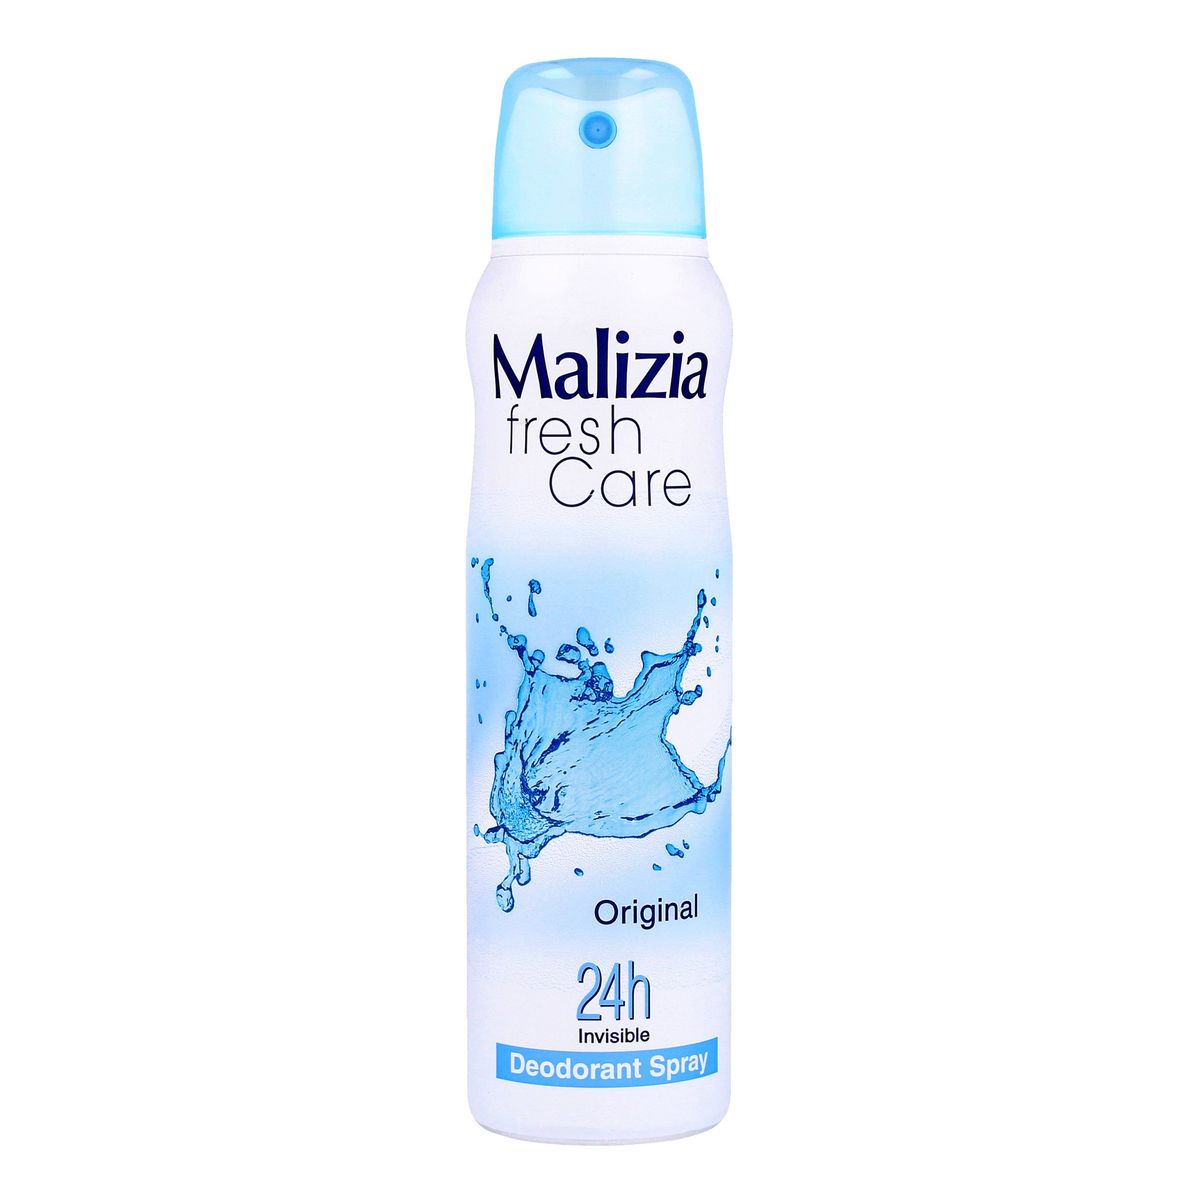 Malizia Fresh Care Deodorant spray Original 24h Invisible 150ml